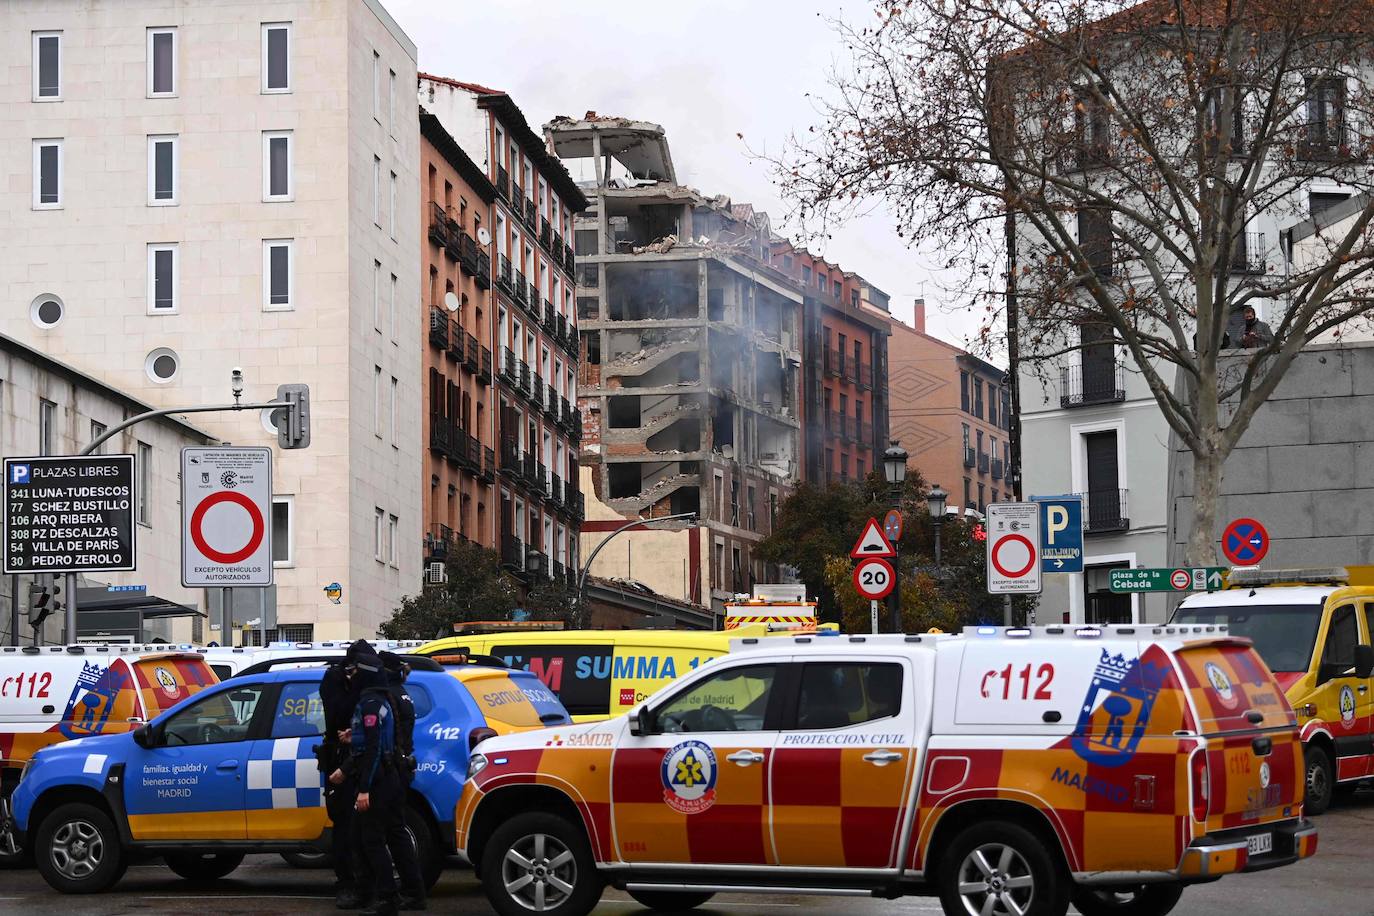 Ambulancias del Summa 112 y vehículos del Samur Social, momentos posteriores la fuerte explosión registrada la calle Toledo que ha hundido tres plantas de un edificio. 